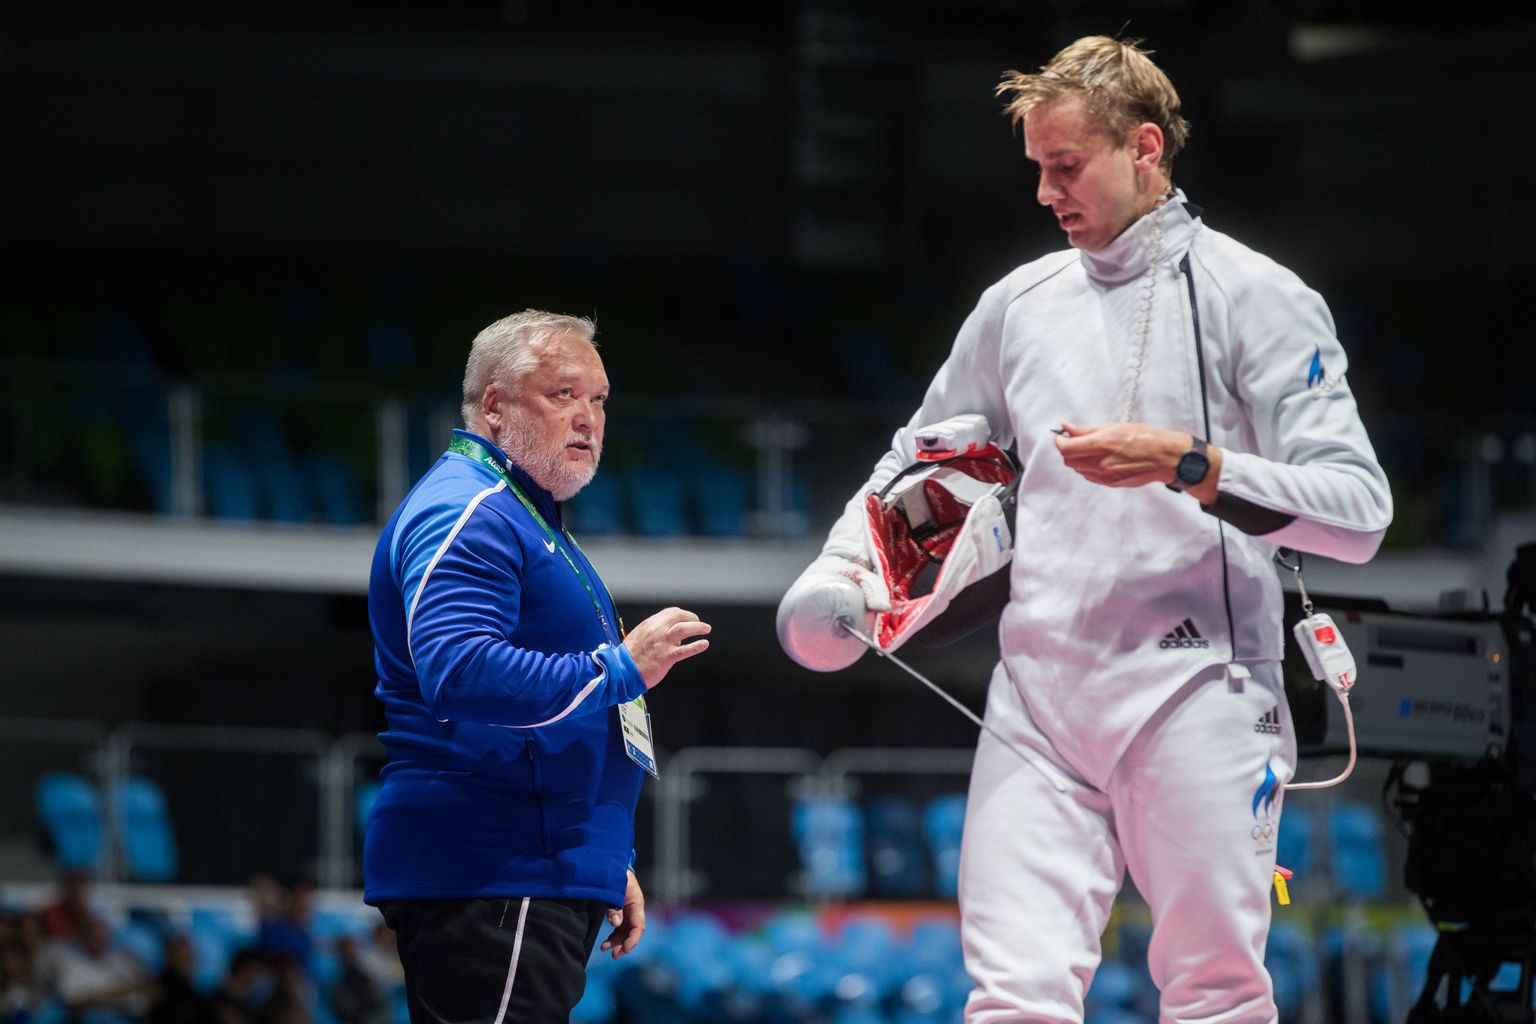 Николай Новоселов (справа) и Игорь Чикинев, 2016 год, Олимпиада в Рио де Жанейро.